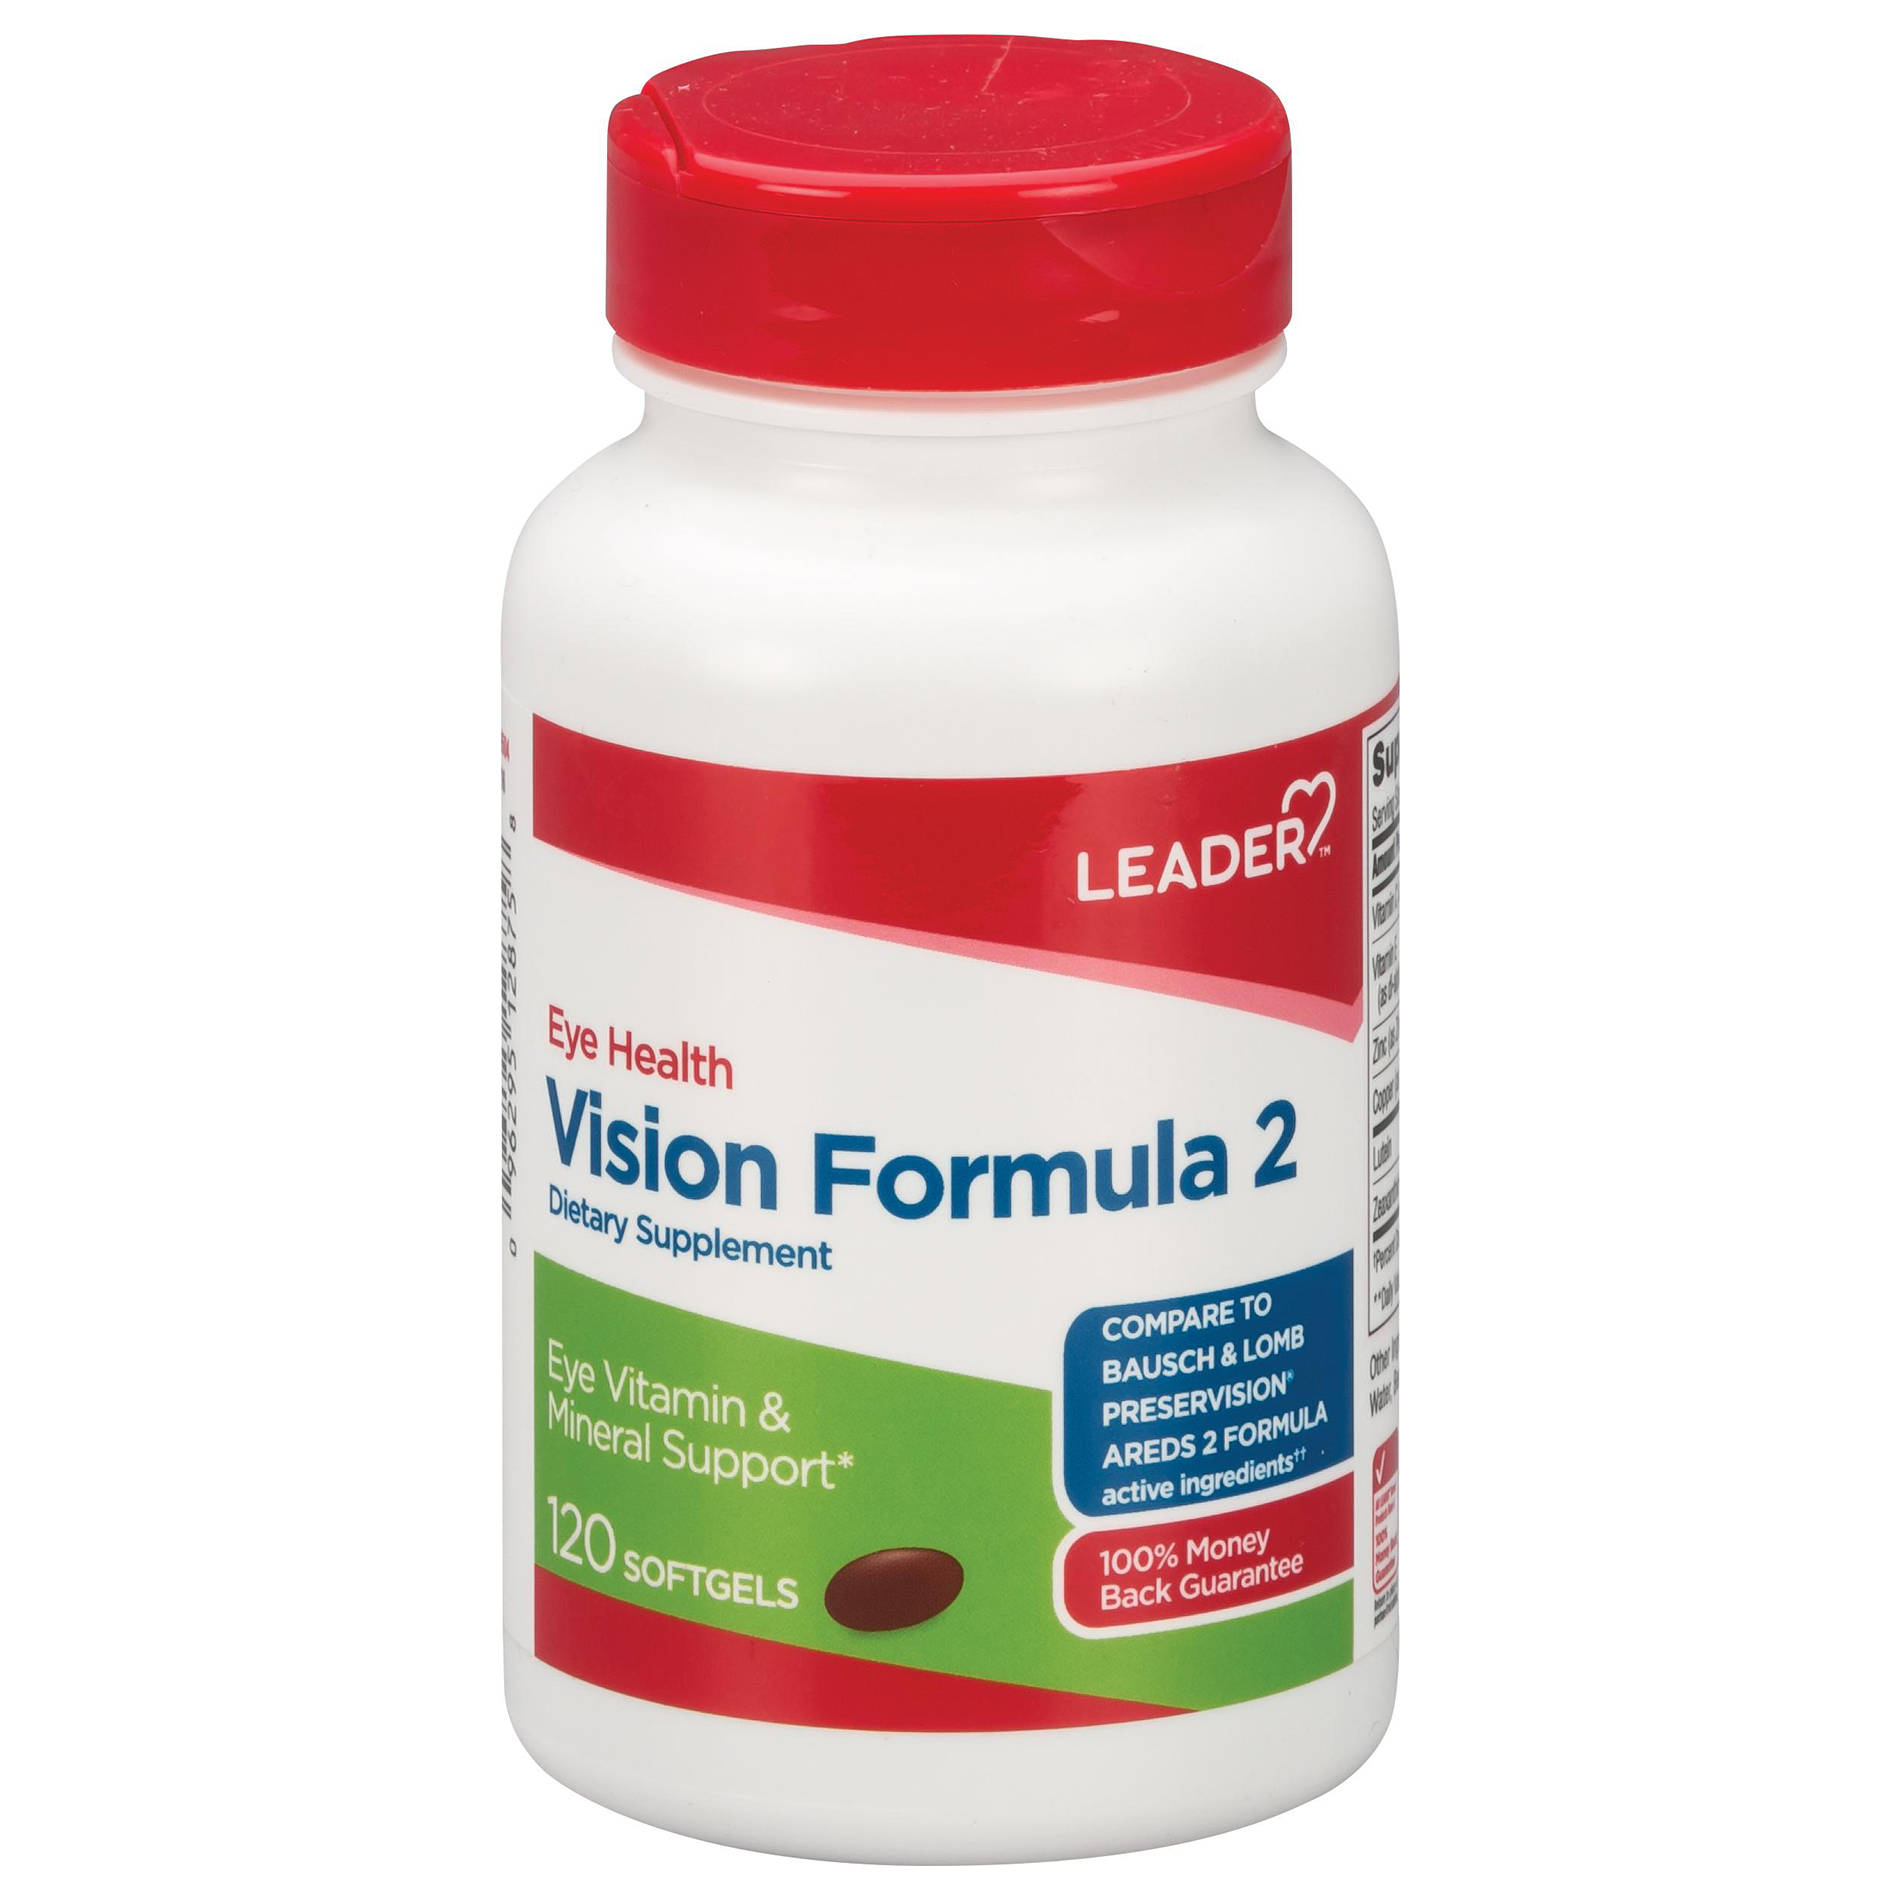 Leader Eye Health Vision Formula 2 Softgels, 120 Count